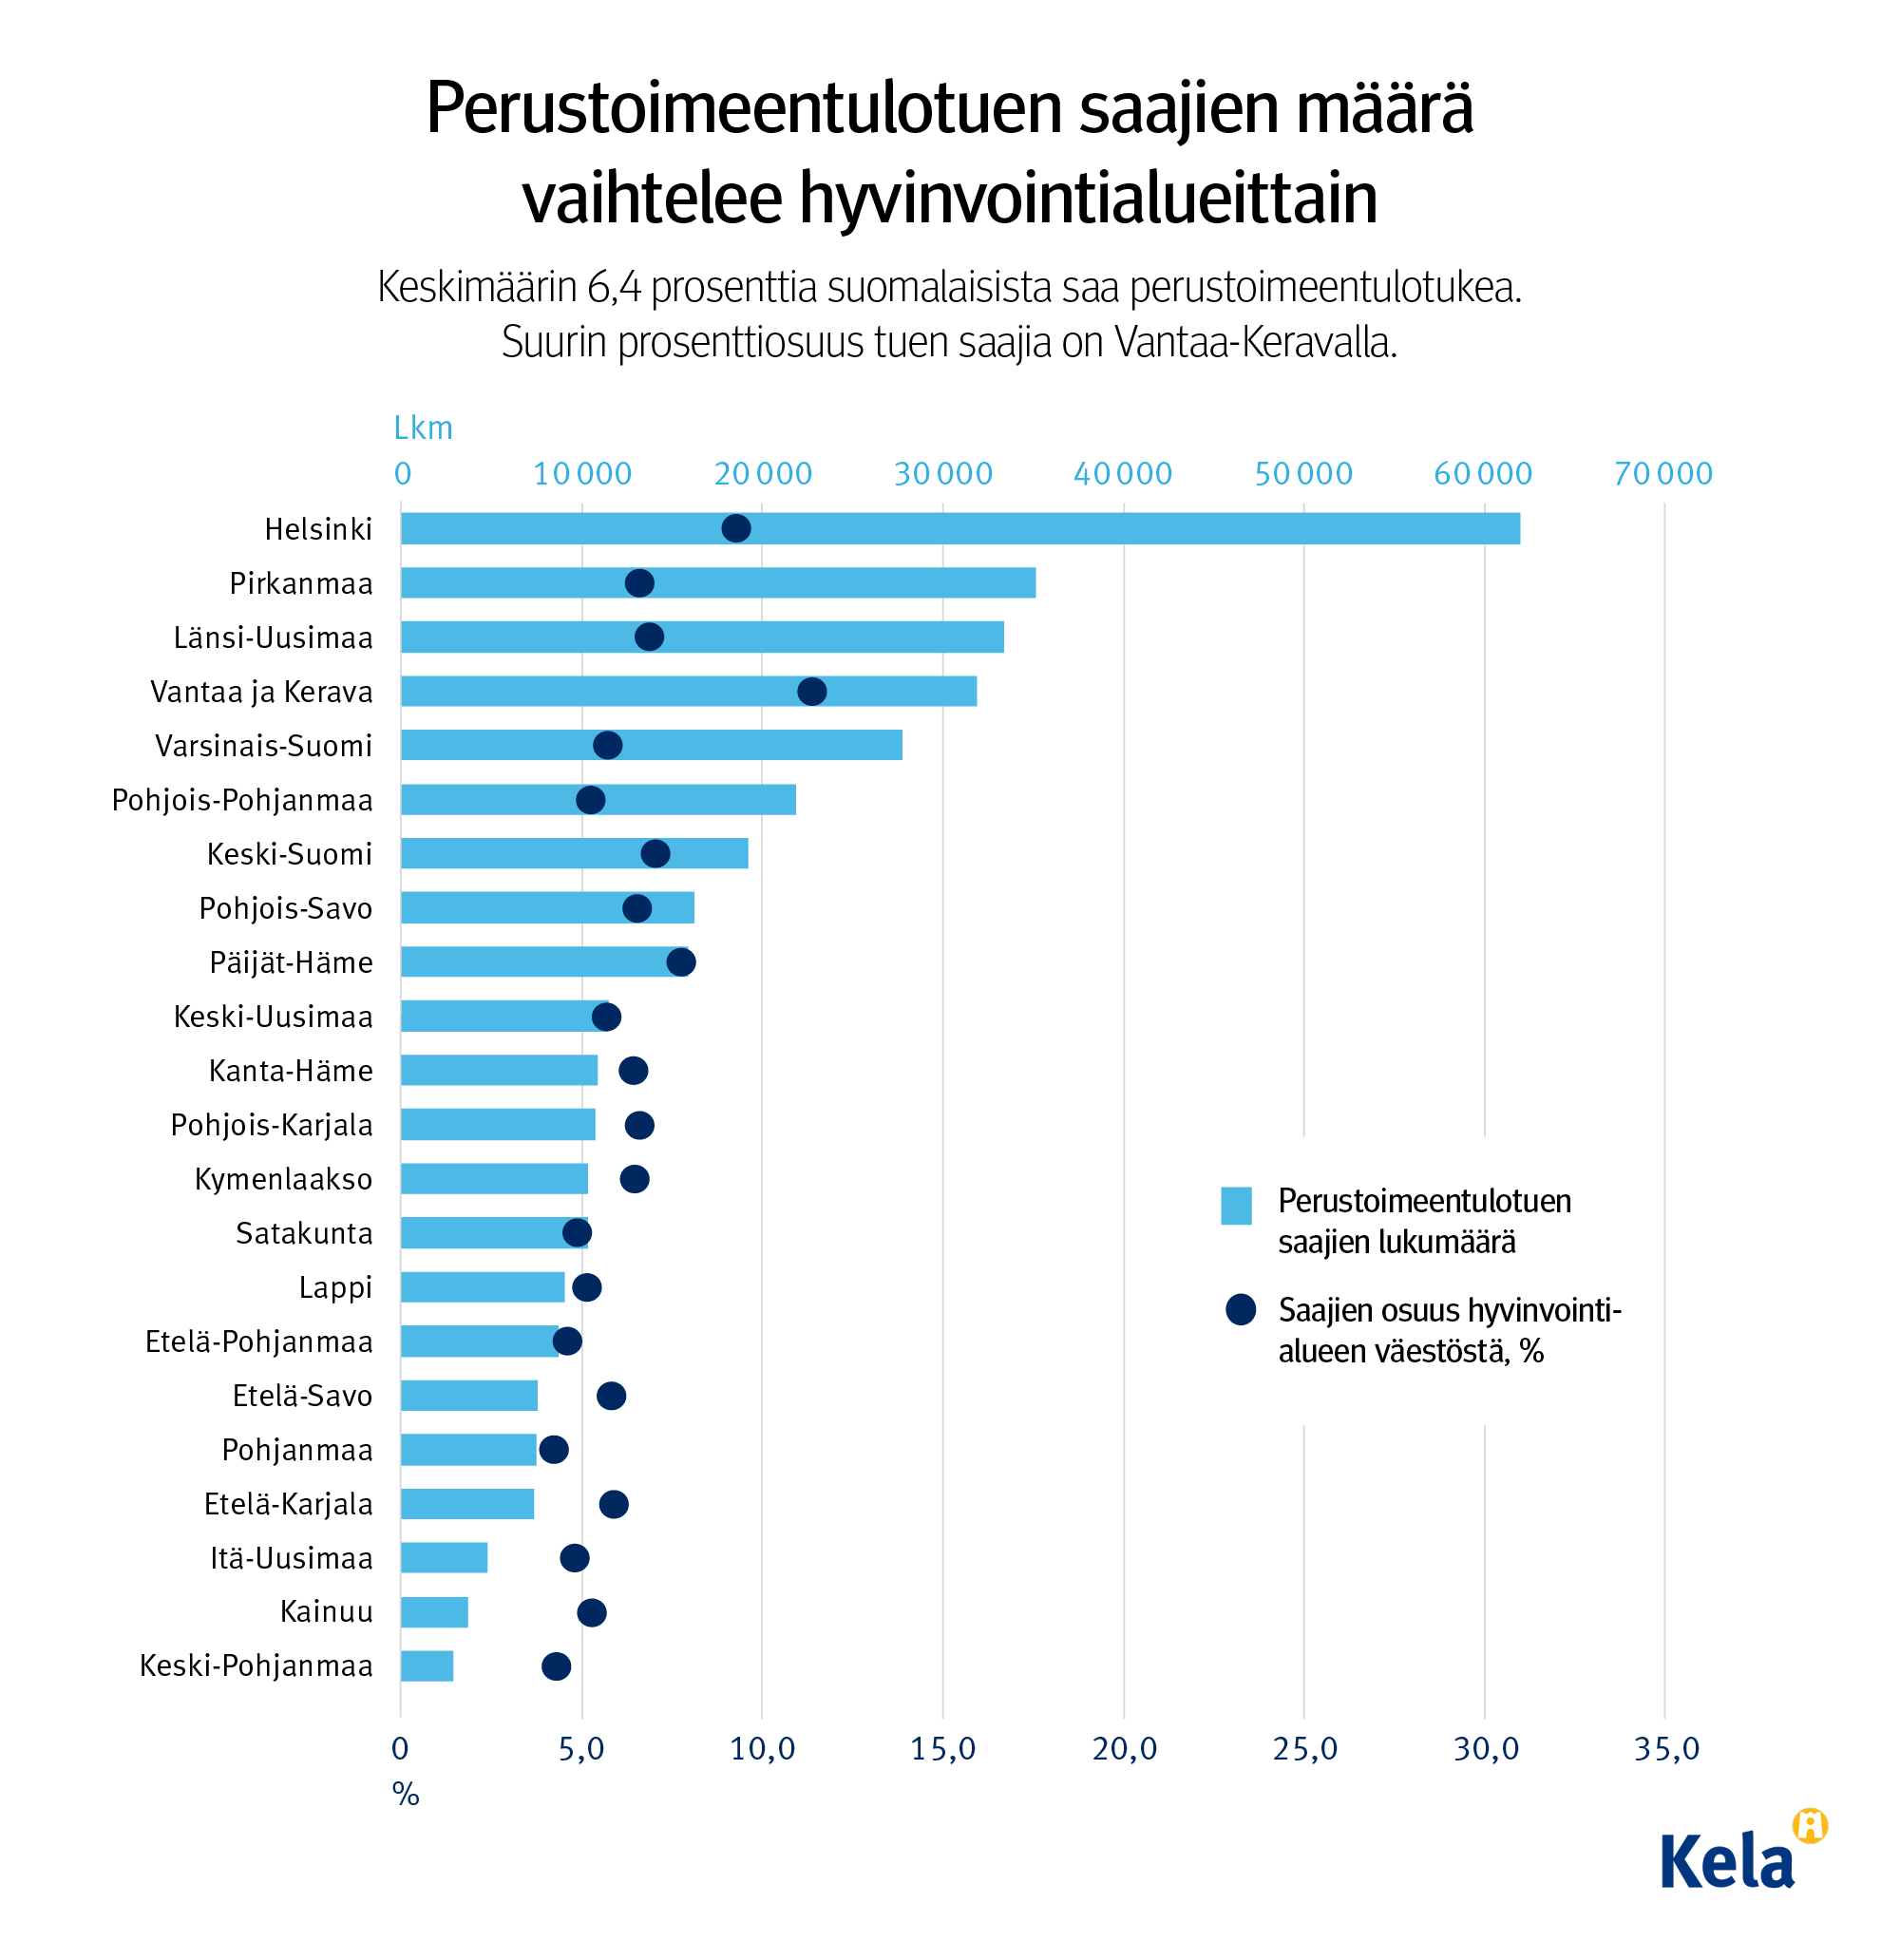 Graafin otsikko: Perustoimeentulotuen saajien määrä vaihtelee hyvinvointialueittain. Alaotsikko: Keskimäärin 6,4 prosenttia suomalaisista saa perustoimeentulotukea. Suurin  prosenttiosuus tuen saajia on Vantaa-Keravalla.  Kuvio näyttää, että eniten tuen saajia on Helsingissä, Pirkanmaalla ja Länsi-Uusimaalla,  vähiten Keski-Pohjanmaalla ja toiseksi vähiten Kainuussa. 